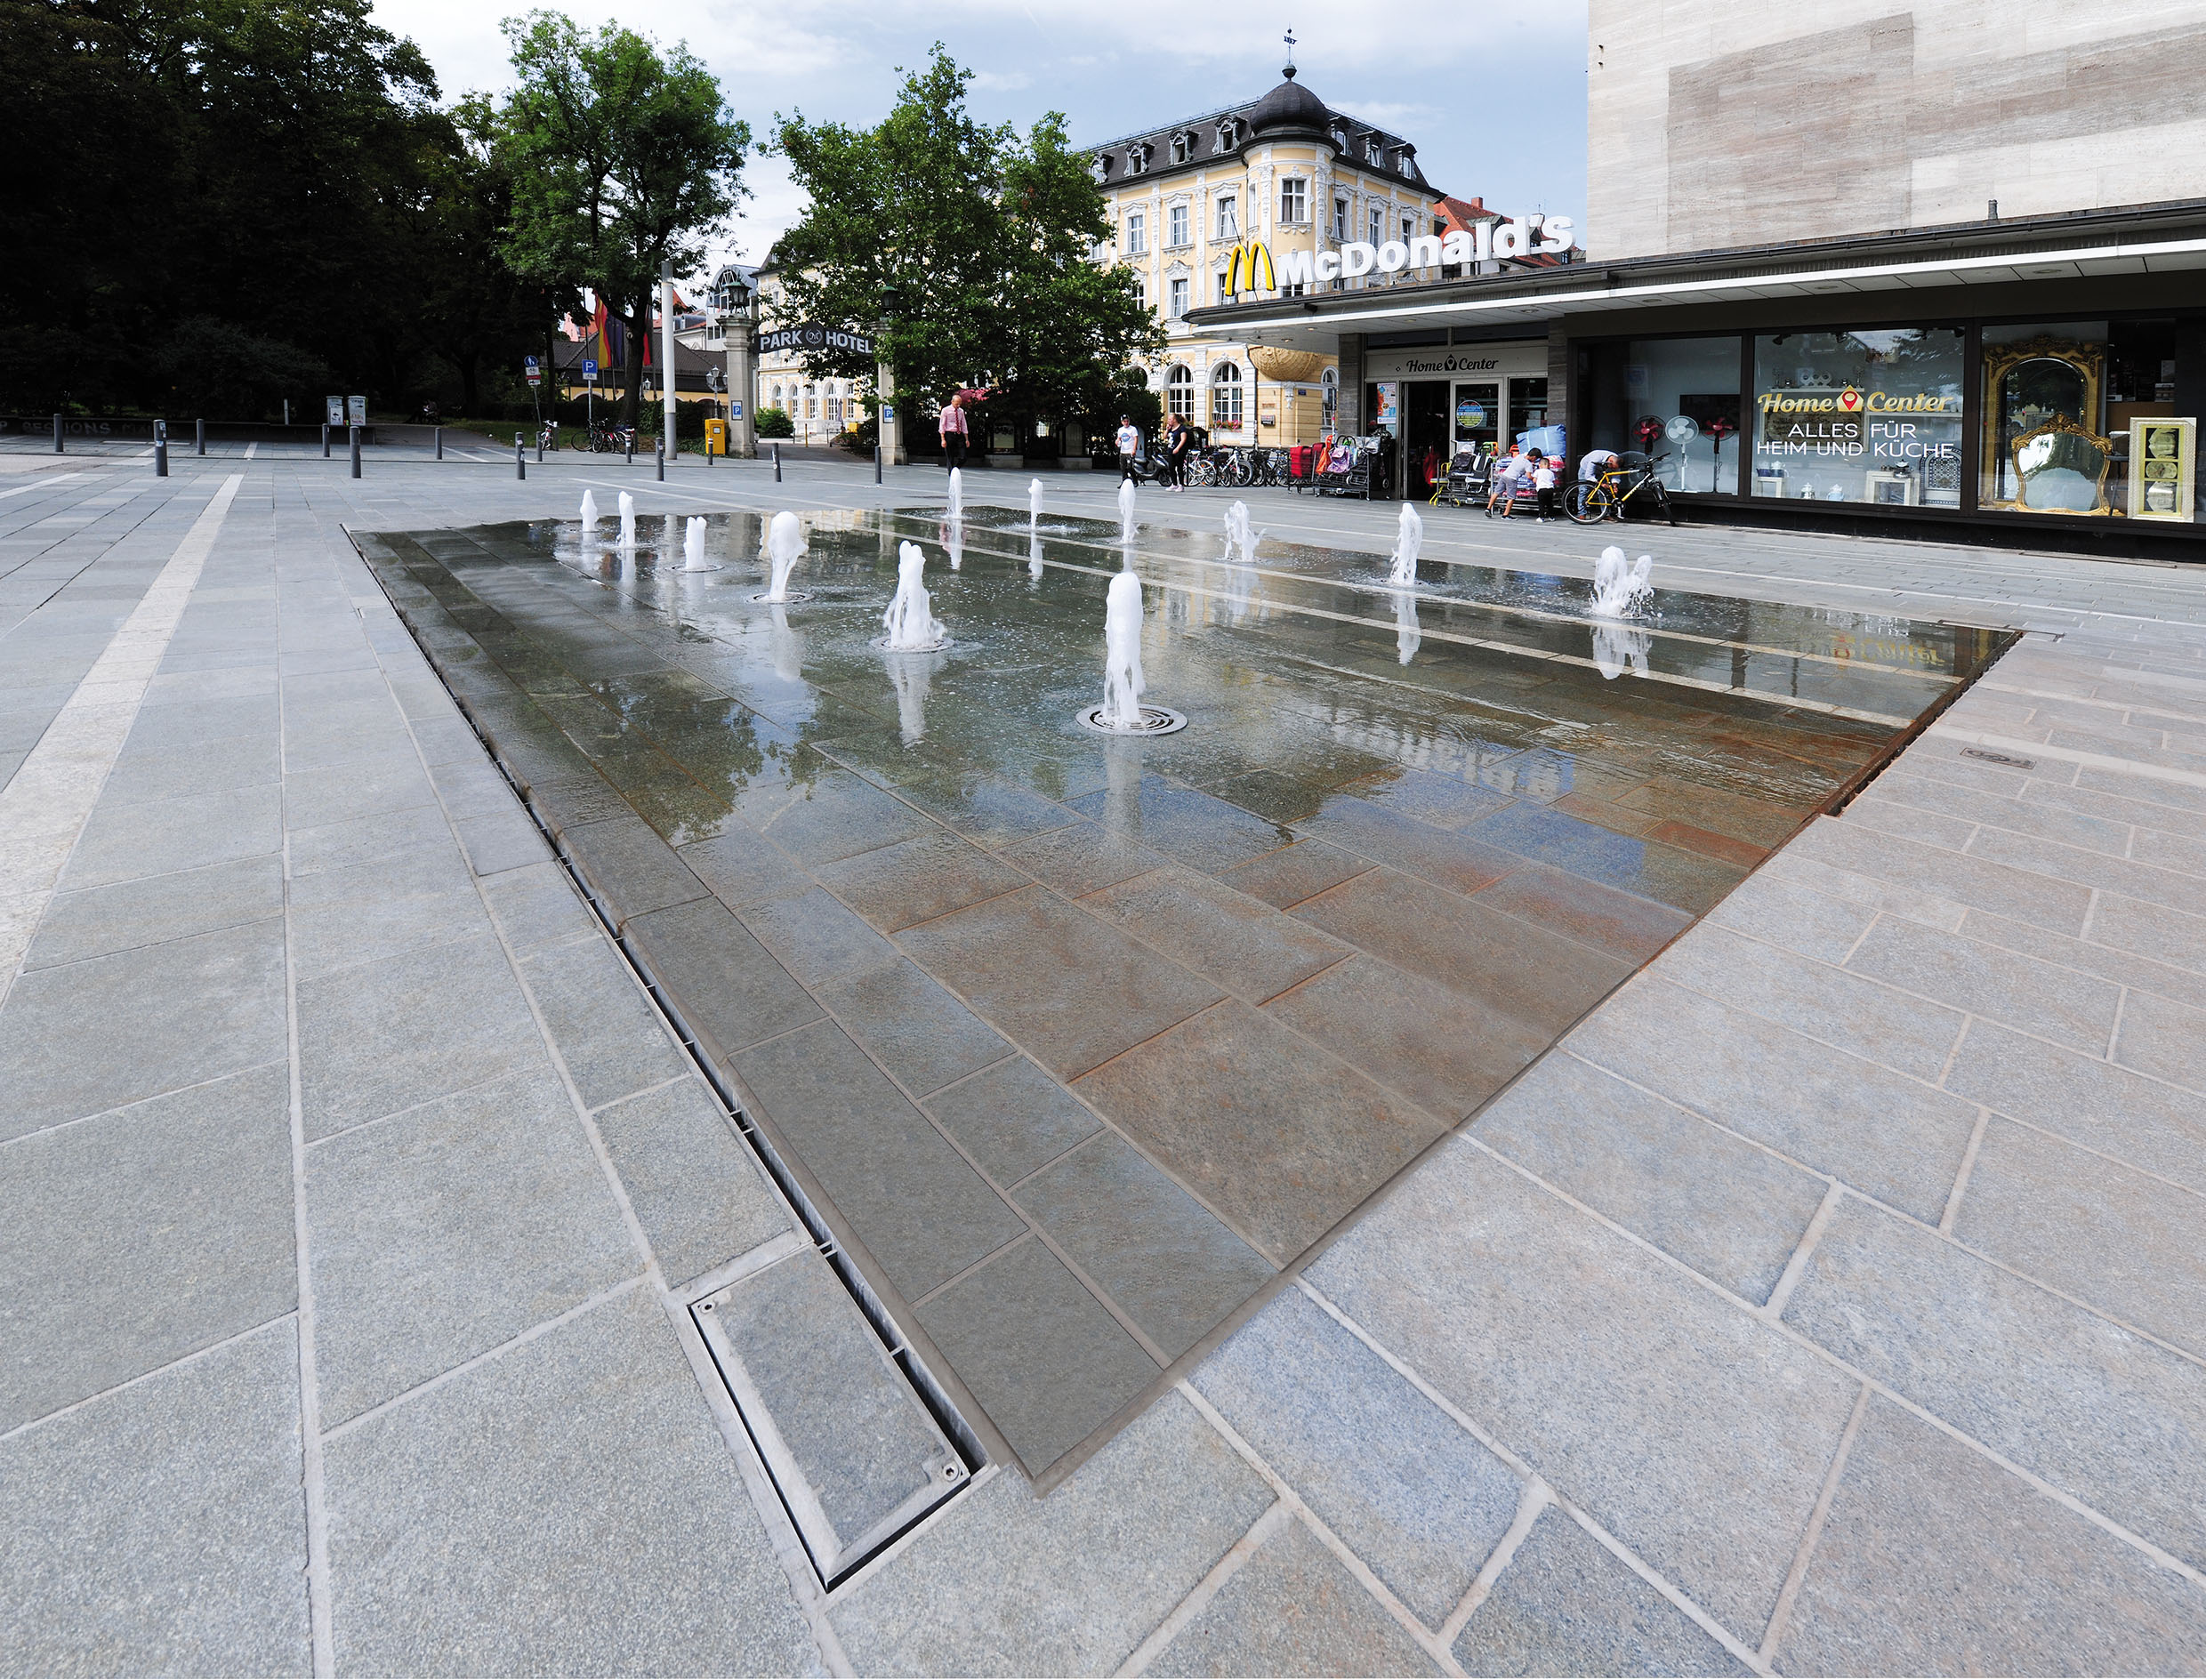 Aan de Ernst-Reuter-Platz in Regensburg werd een nieuwe fontein na een grondige renovatie van het plein in gebruik genomen.